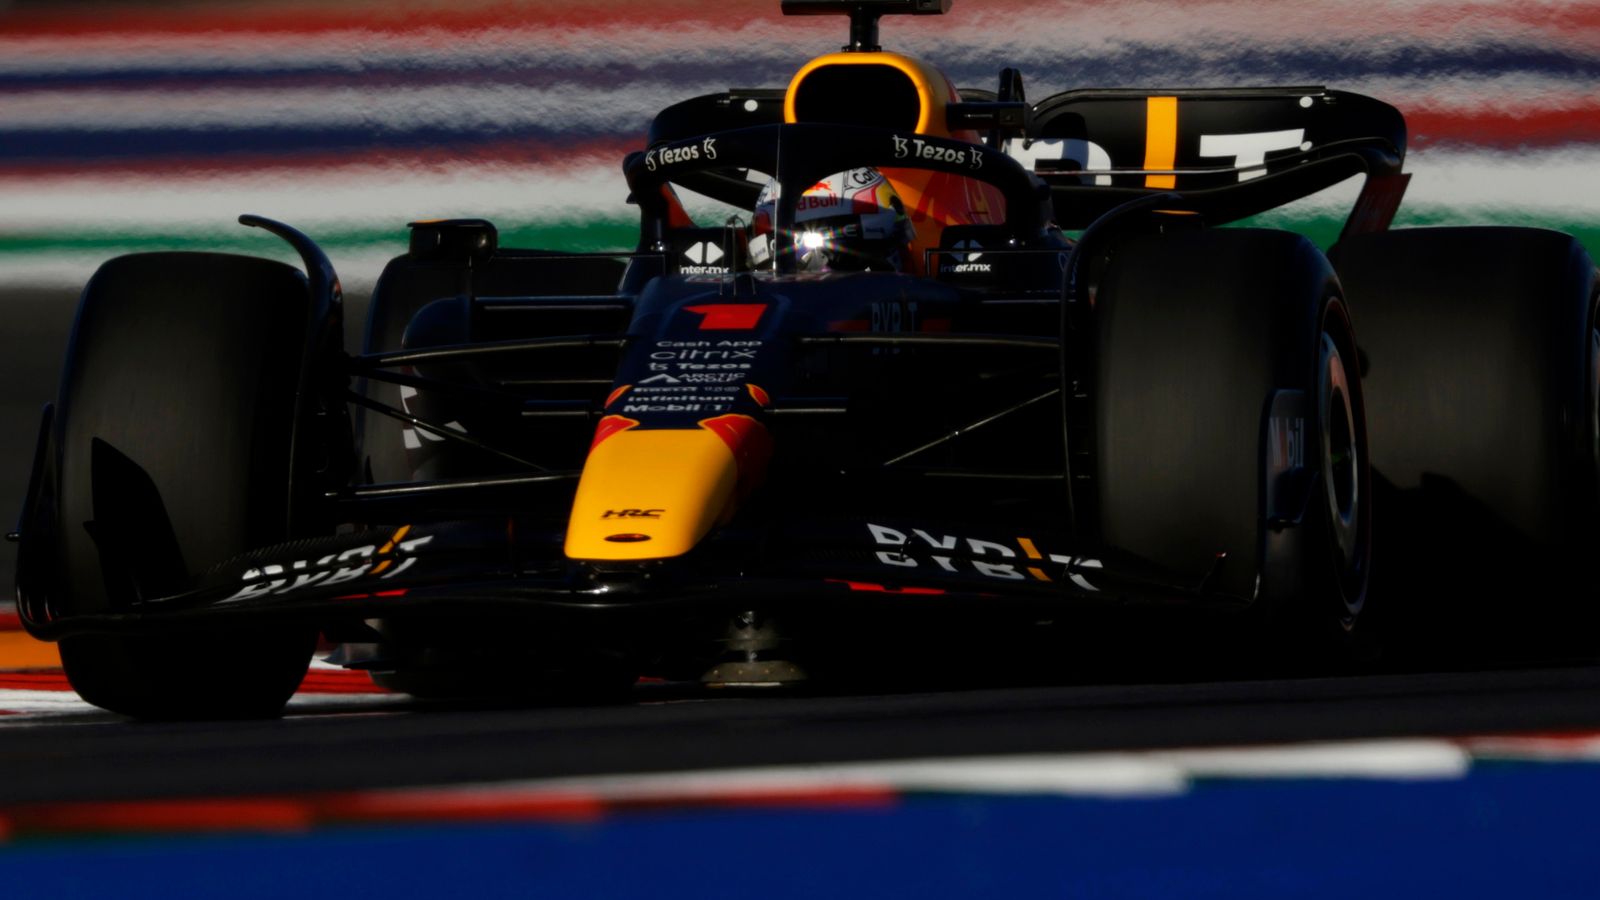 GP Amerika Serikat: Max Verstappen memimpin sesi latihan terakhir untuk Red Bull, Charles Leclerc mengonfirmasi penalti awal